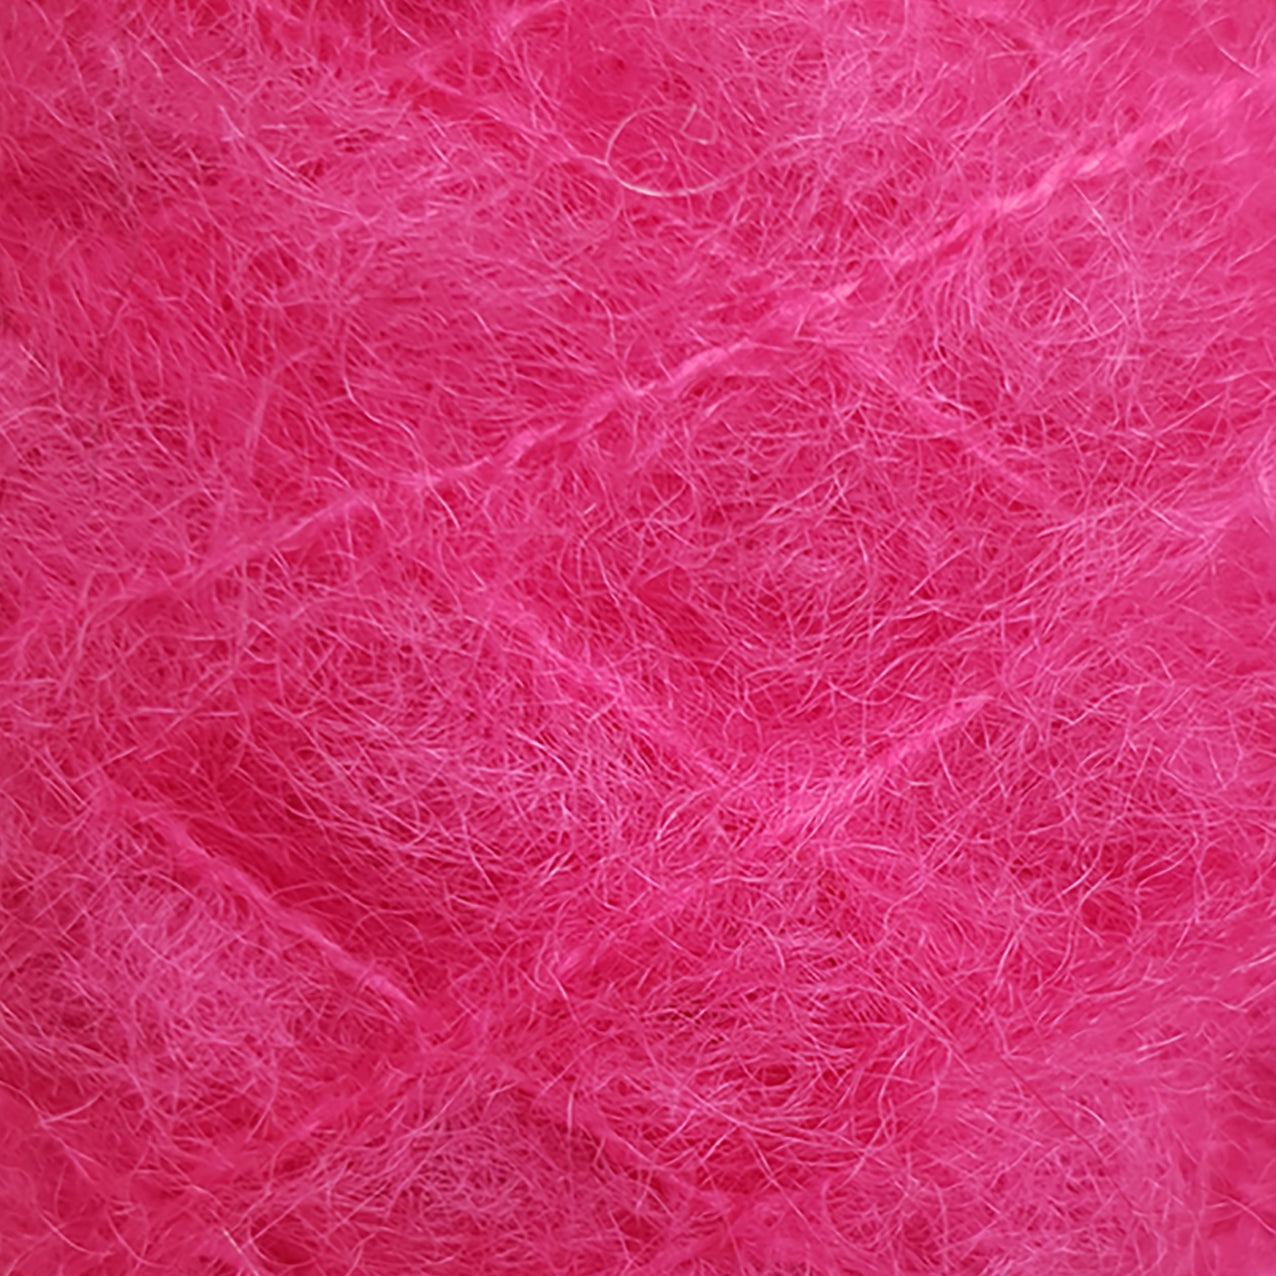 Brushed Mohair Yarn, Shocking Pink, 50g Ball